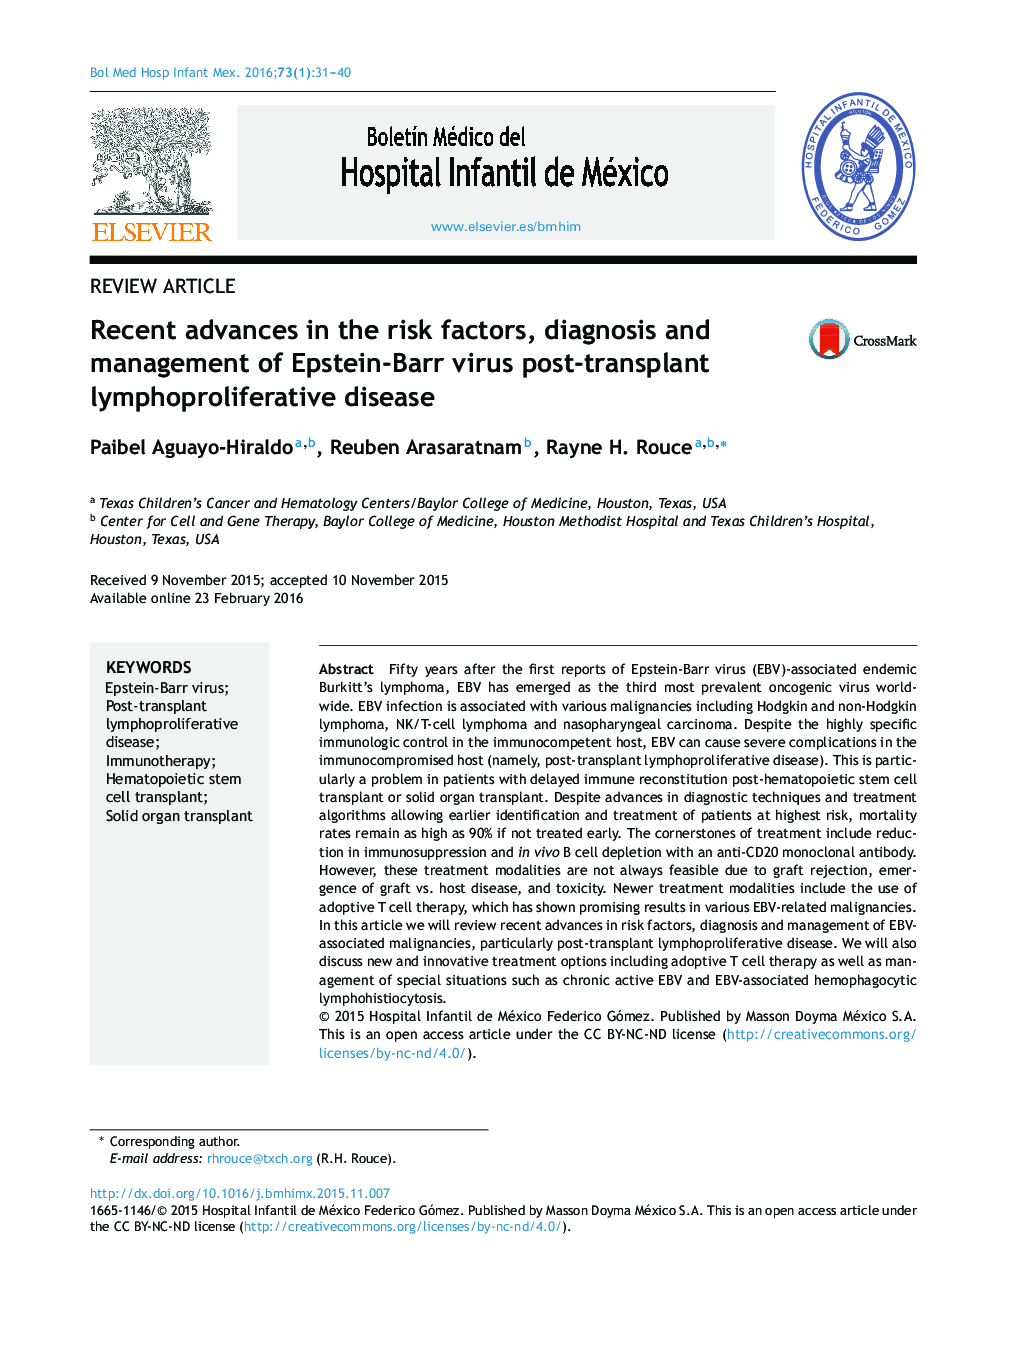 پیشرفت های اخیر در عوامل خطر، تشخیص و مدیریت ویروس اپشتین بار پس از پیوند لنفوسیت